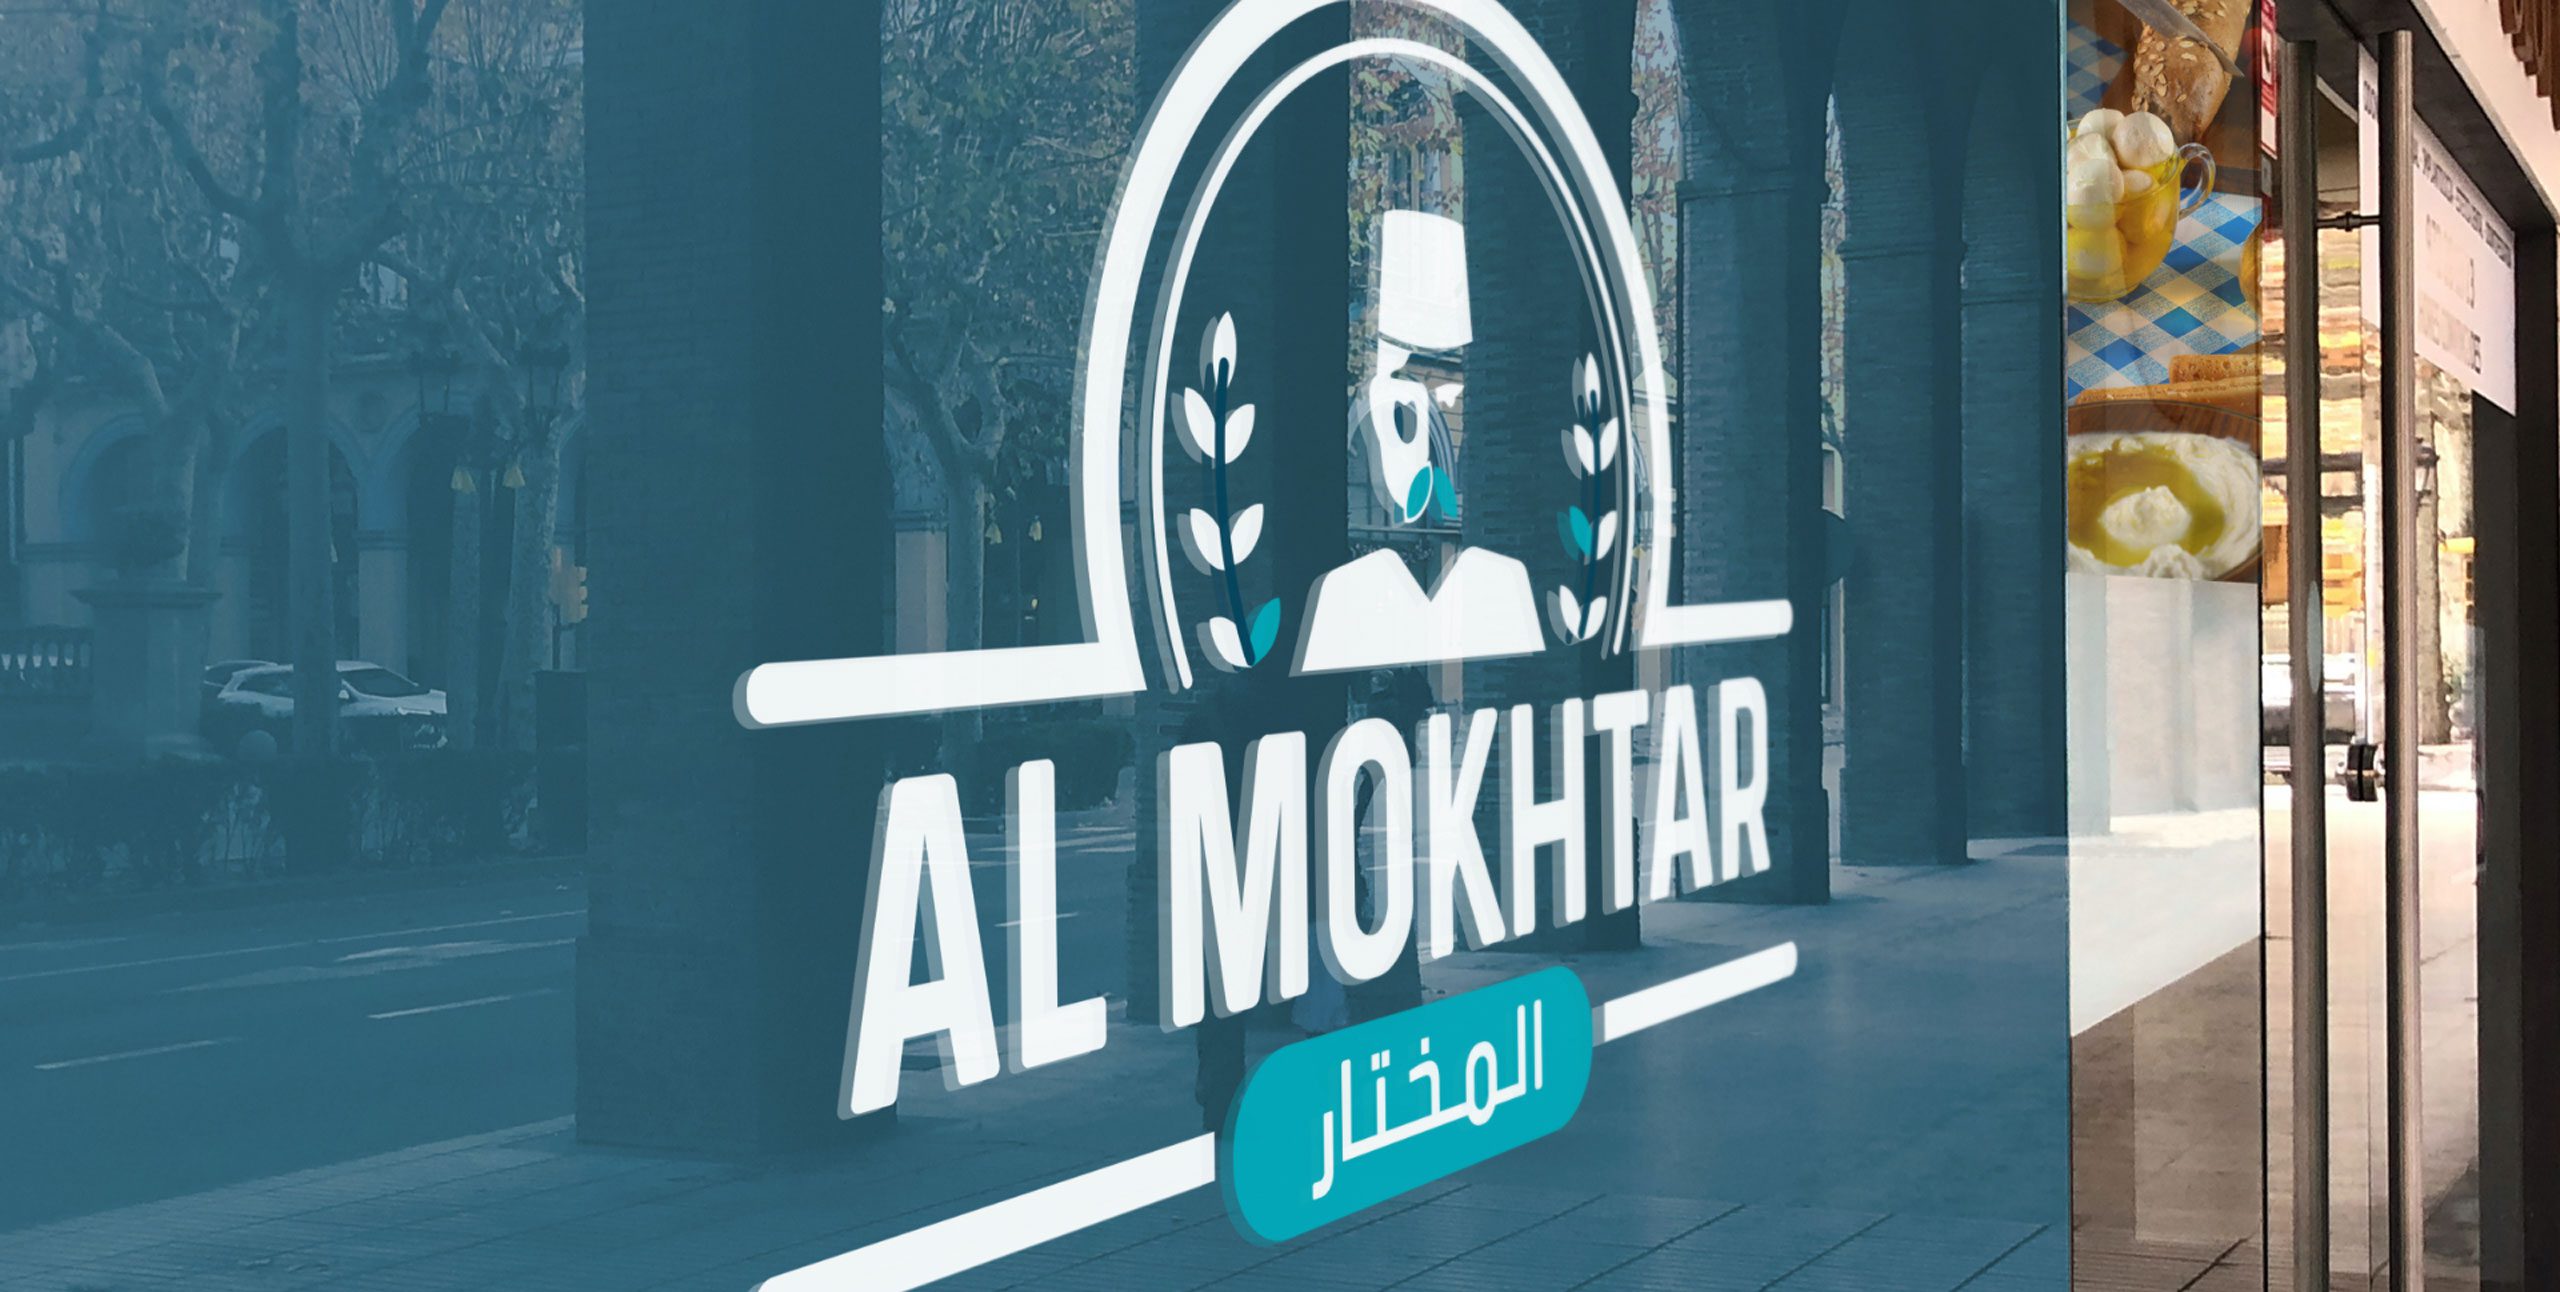 Our Creation - Al-mokhtar